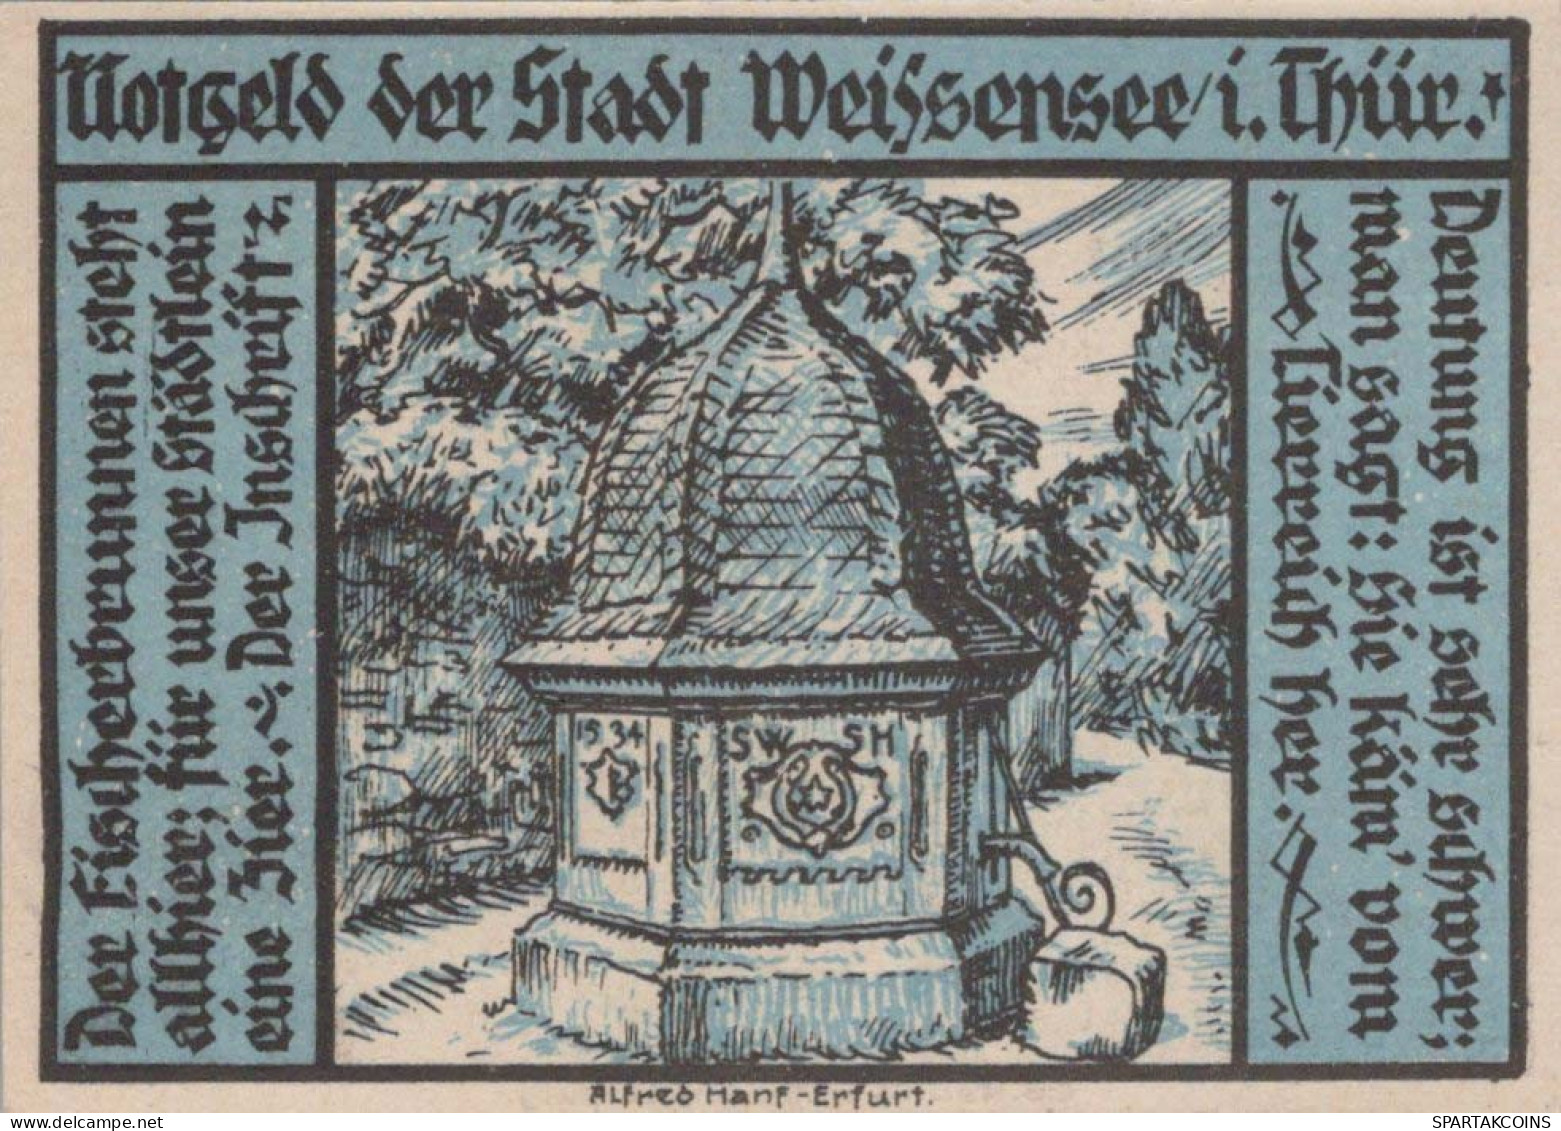 25 PFENNIG 1921 Stadt WEISSENSEE Saxony DEUTSCHLAND Notgeld Banknote #PF618 - [11] Emisiones Locales